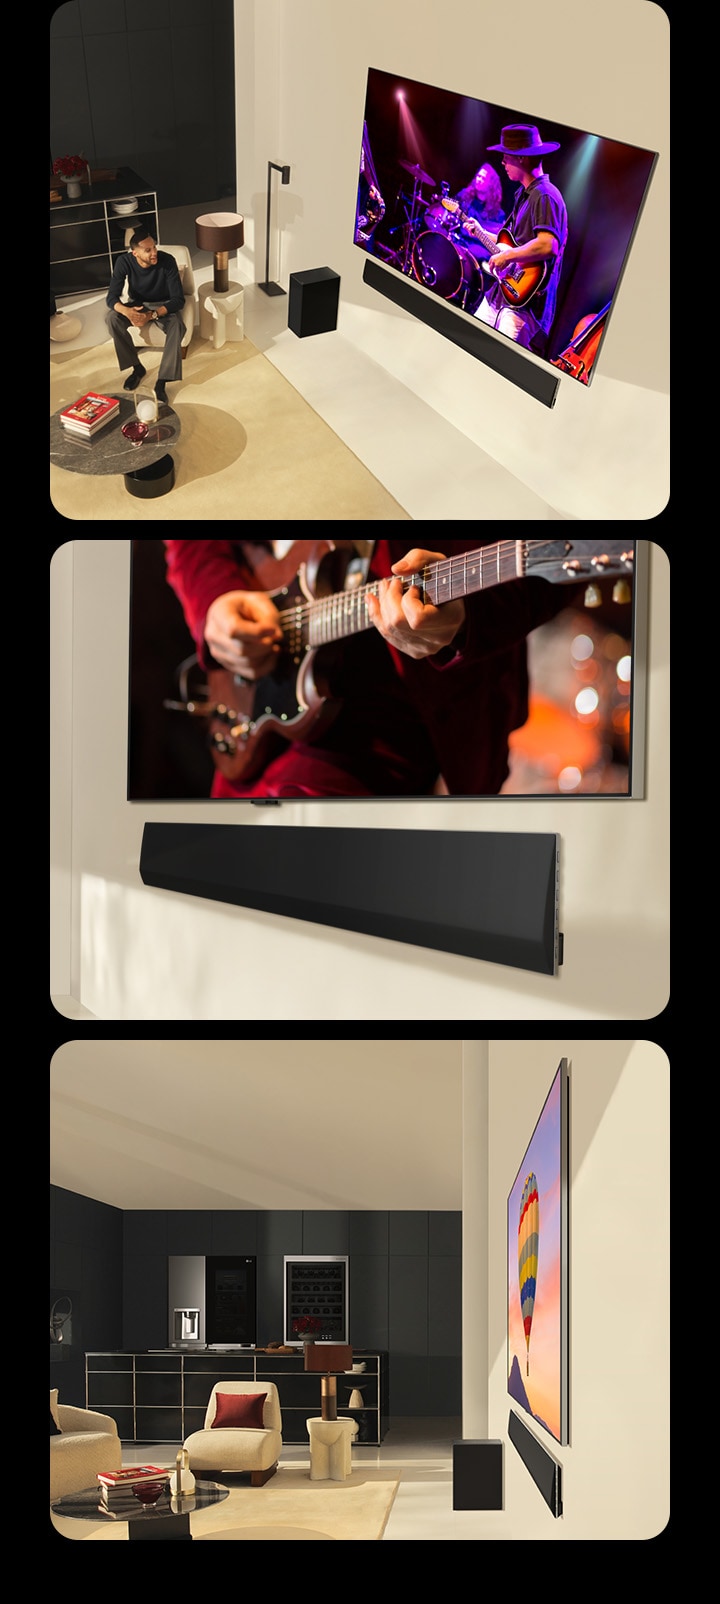 Tiga gambar ditampilkan secara berurutan. Pertama, sepasang kekasih menonton konser yang ditampilkan di LG OLED evo G4 dengan LG Soundbar SG10TY yang sangat serasi di ruang tamu modern, sementara gambar yang sama dengan seorang pria sedang menonton TV ditampilkan di perangkat seluler. Dan di bawahnya, ditampilkan perspektif miring dari bagian bawah LG OLED TV dan LG Soundbar. Dan yang lainnya menunjukkan tampilan profil samping LG OLED evo G4 dan LG Soundbar SG10TY, keduanya dengan dimensi yang sangat tipis dan hampir tidak ada celah di dinding. 